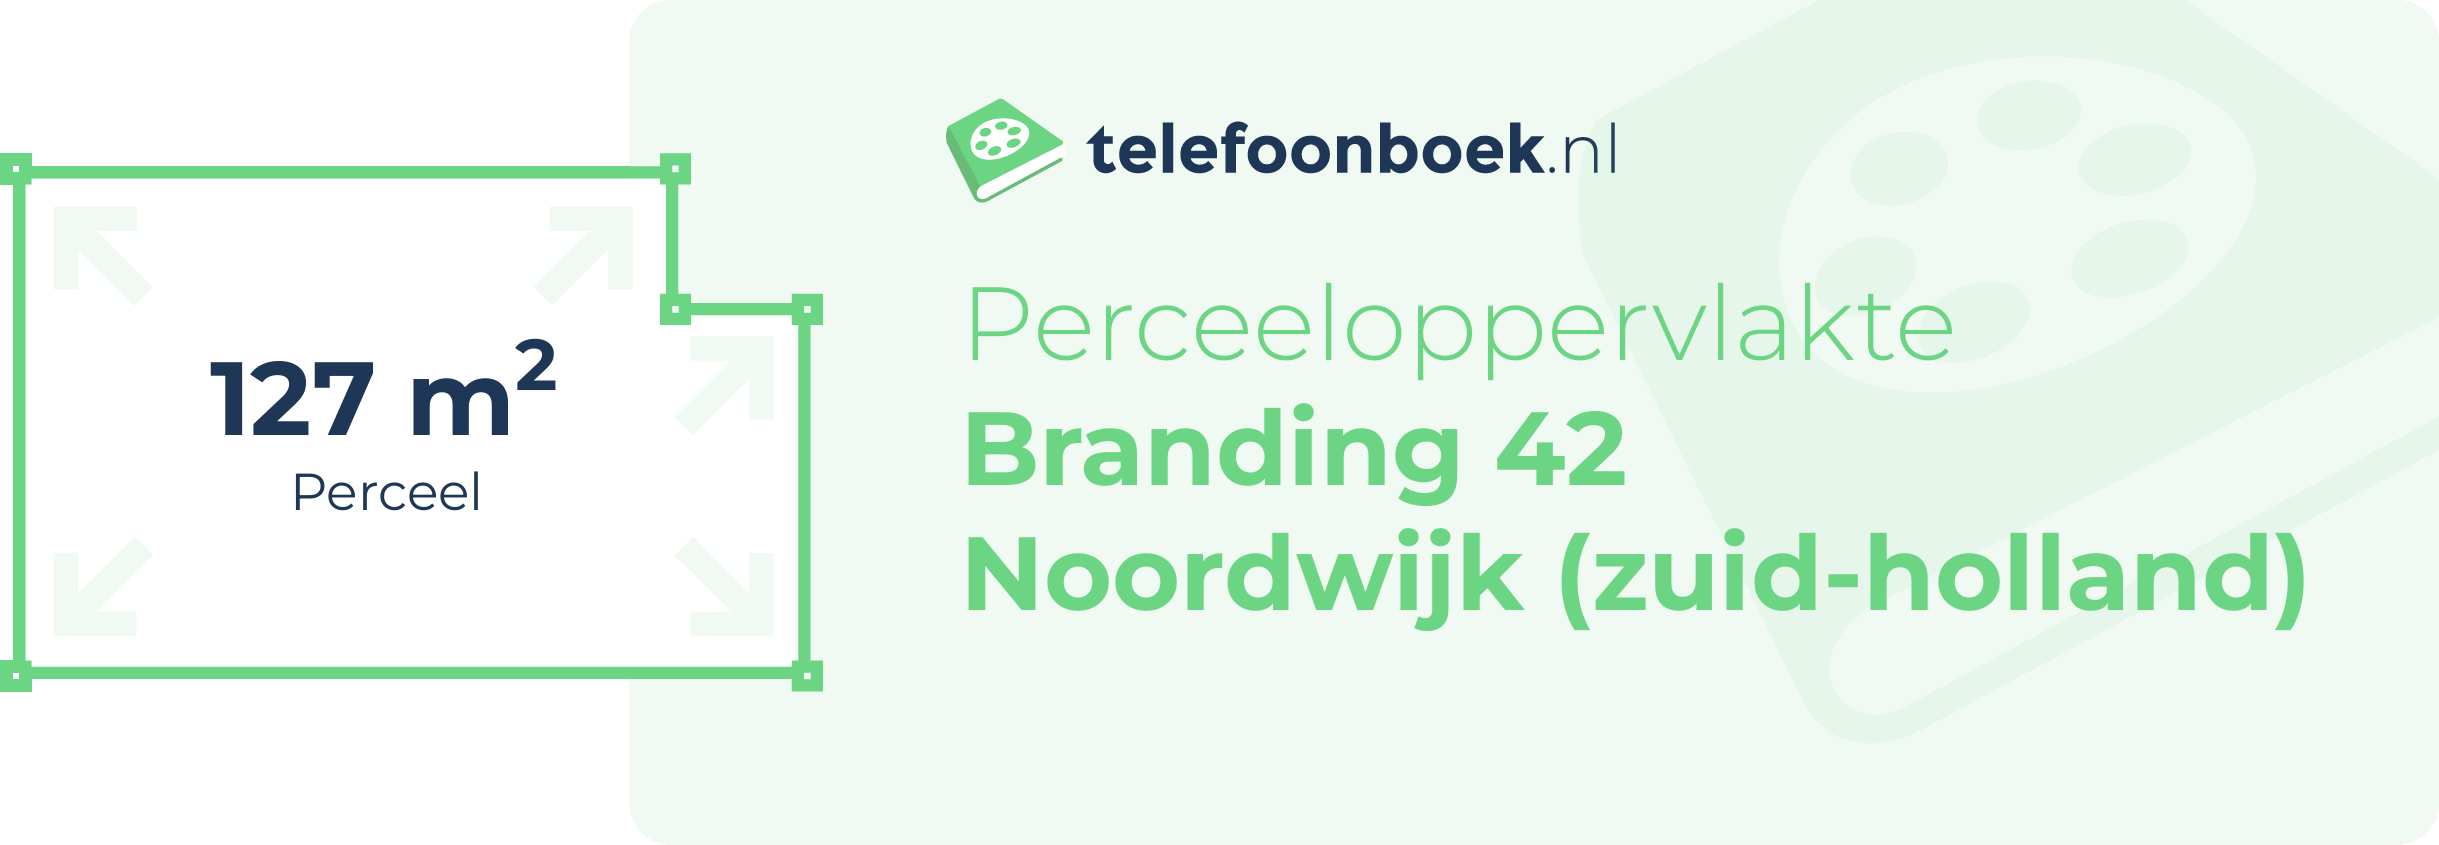 Perceeloppervlakte Branding 42 Noordwijk (Zuid-Holland)